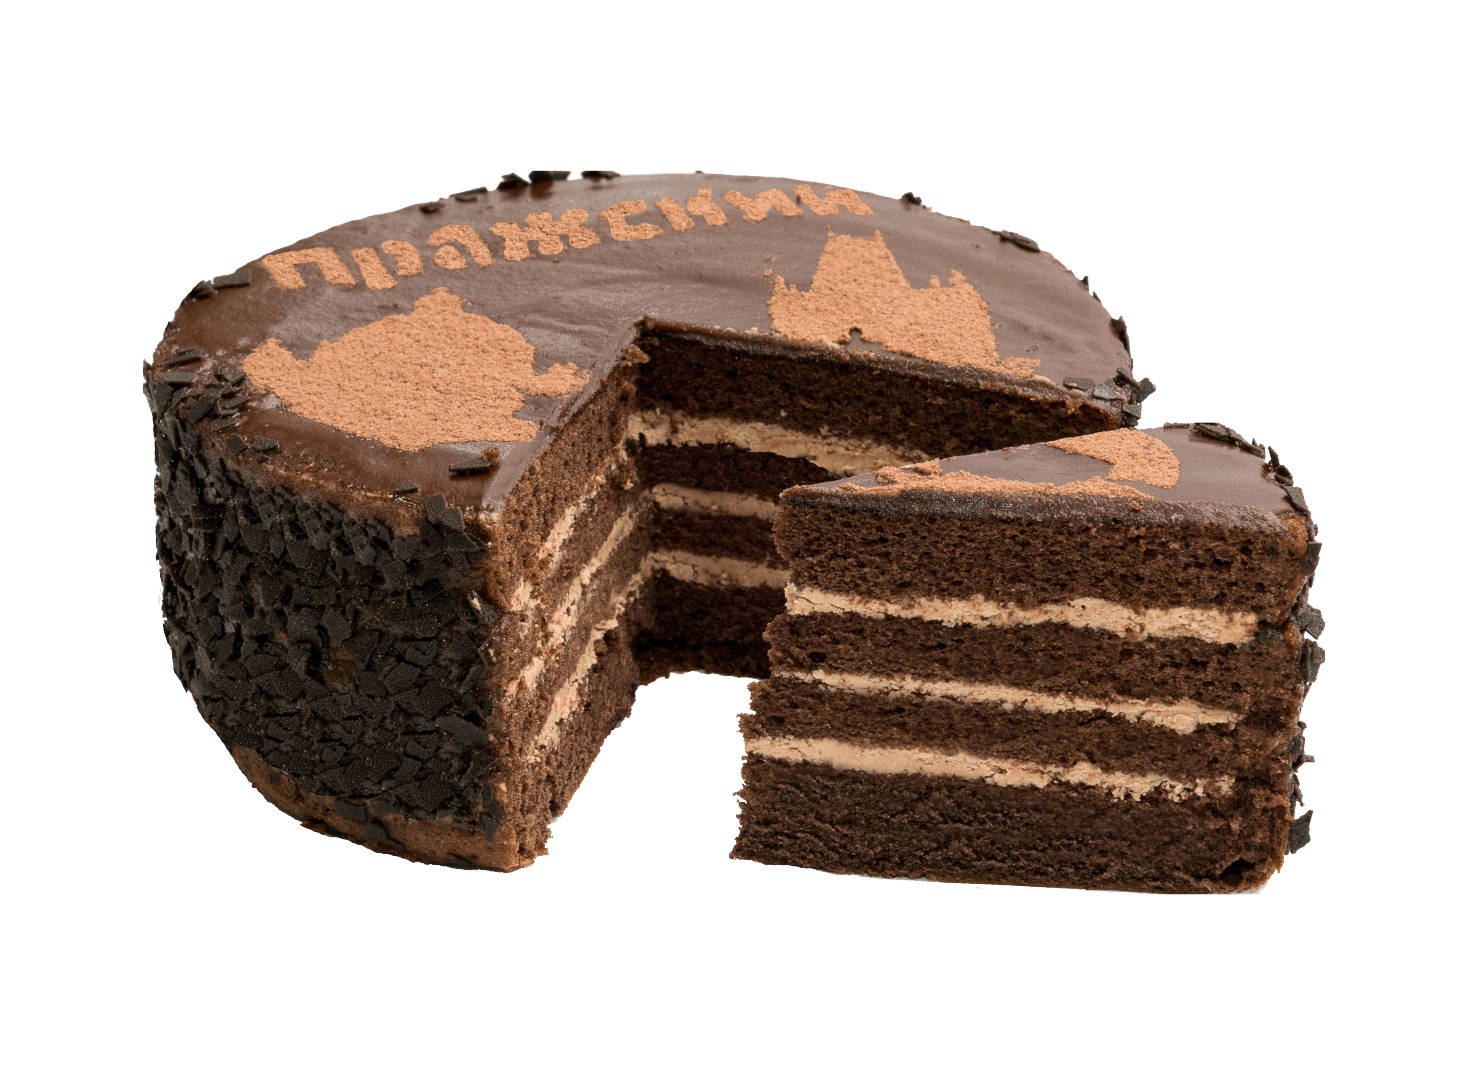 Schokoladenkuchen